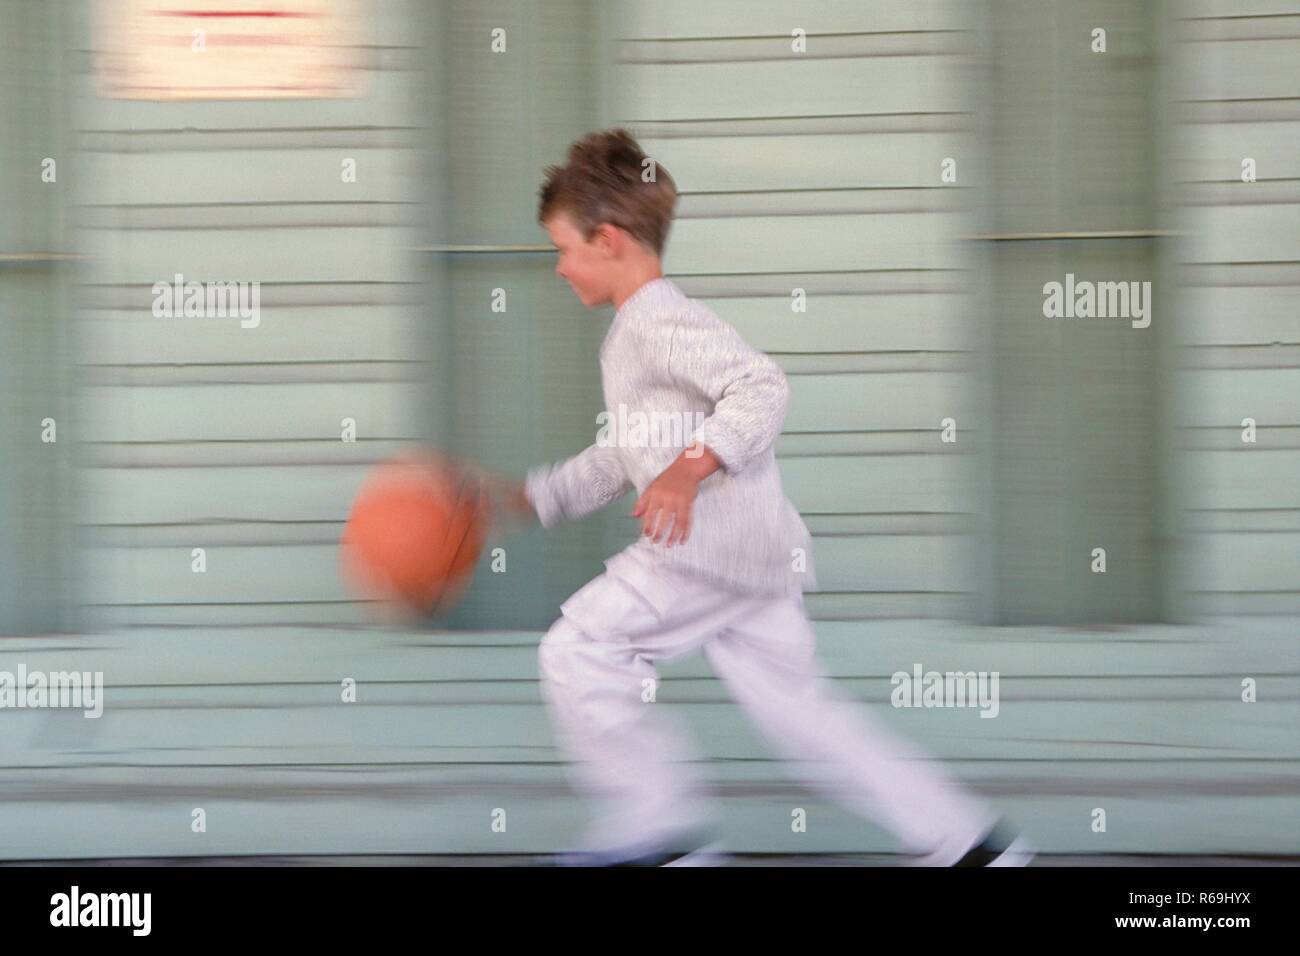 Ritratto, Ganzfigur, 8- jaehriger Junge bekleidet mit grauer flessibile, Pullover und Turnschuhen laeuft mit seinem orangem basket un einer graublau gestrichenen Fassade vorbei Foto Stock